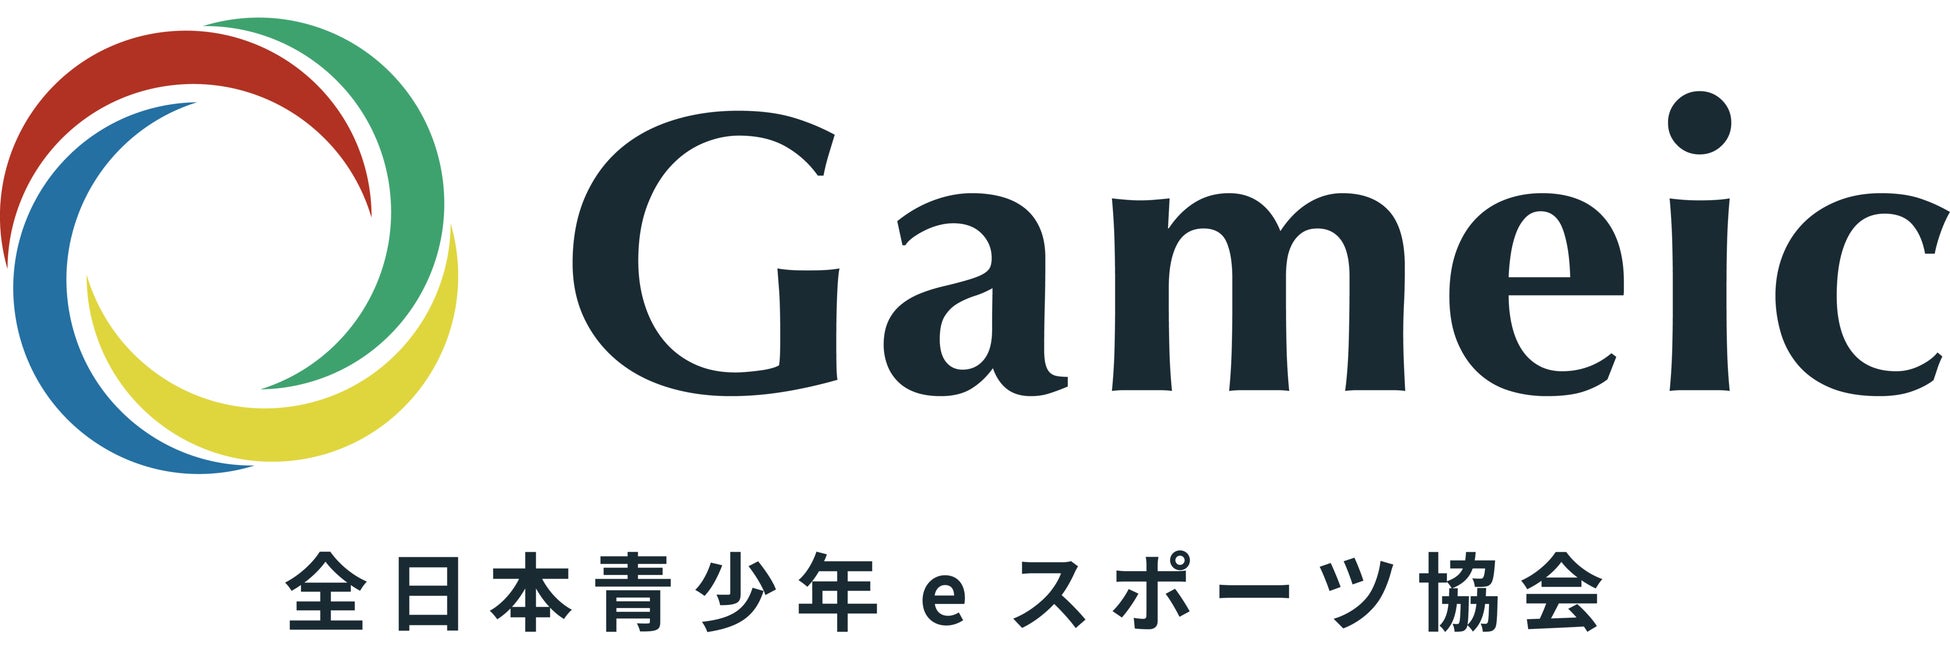 【eスポーツ市場と企業が、SDGsへの取り組みを通じて未来を共創するプロジェクト】全日本青少年eスポーツ協会 / Gameicが「eスポーツ未来プロジェクト」を開始いたします。のサブ画像2